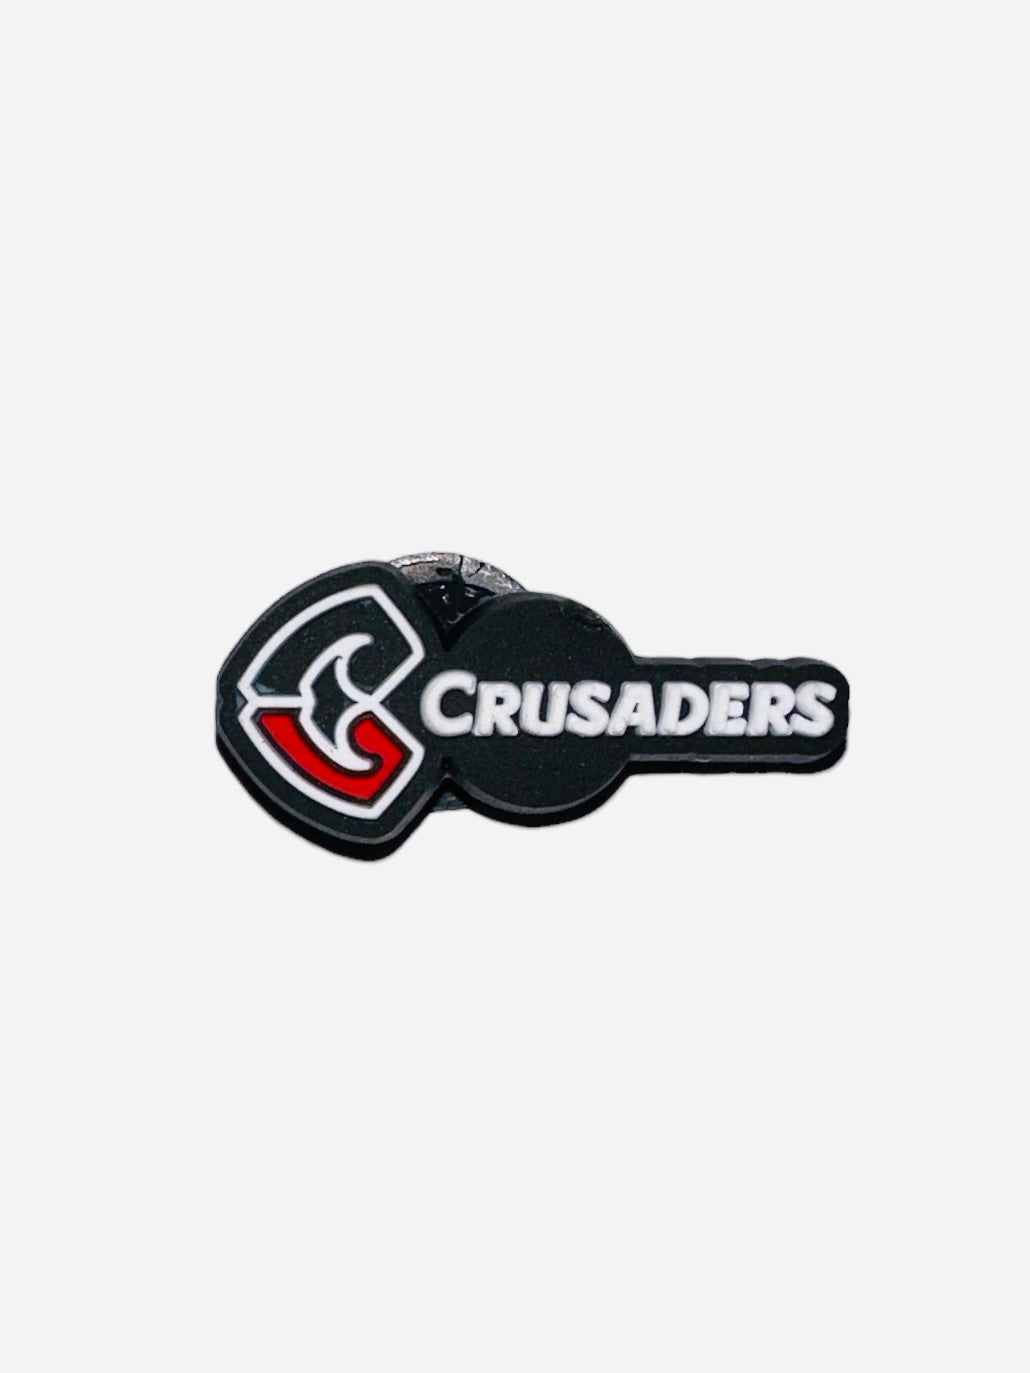 BiTZ - Crusaders